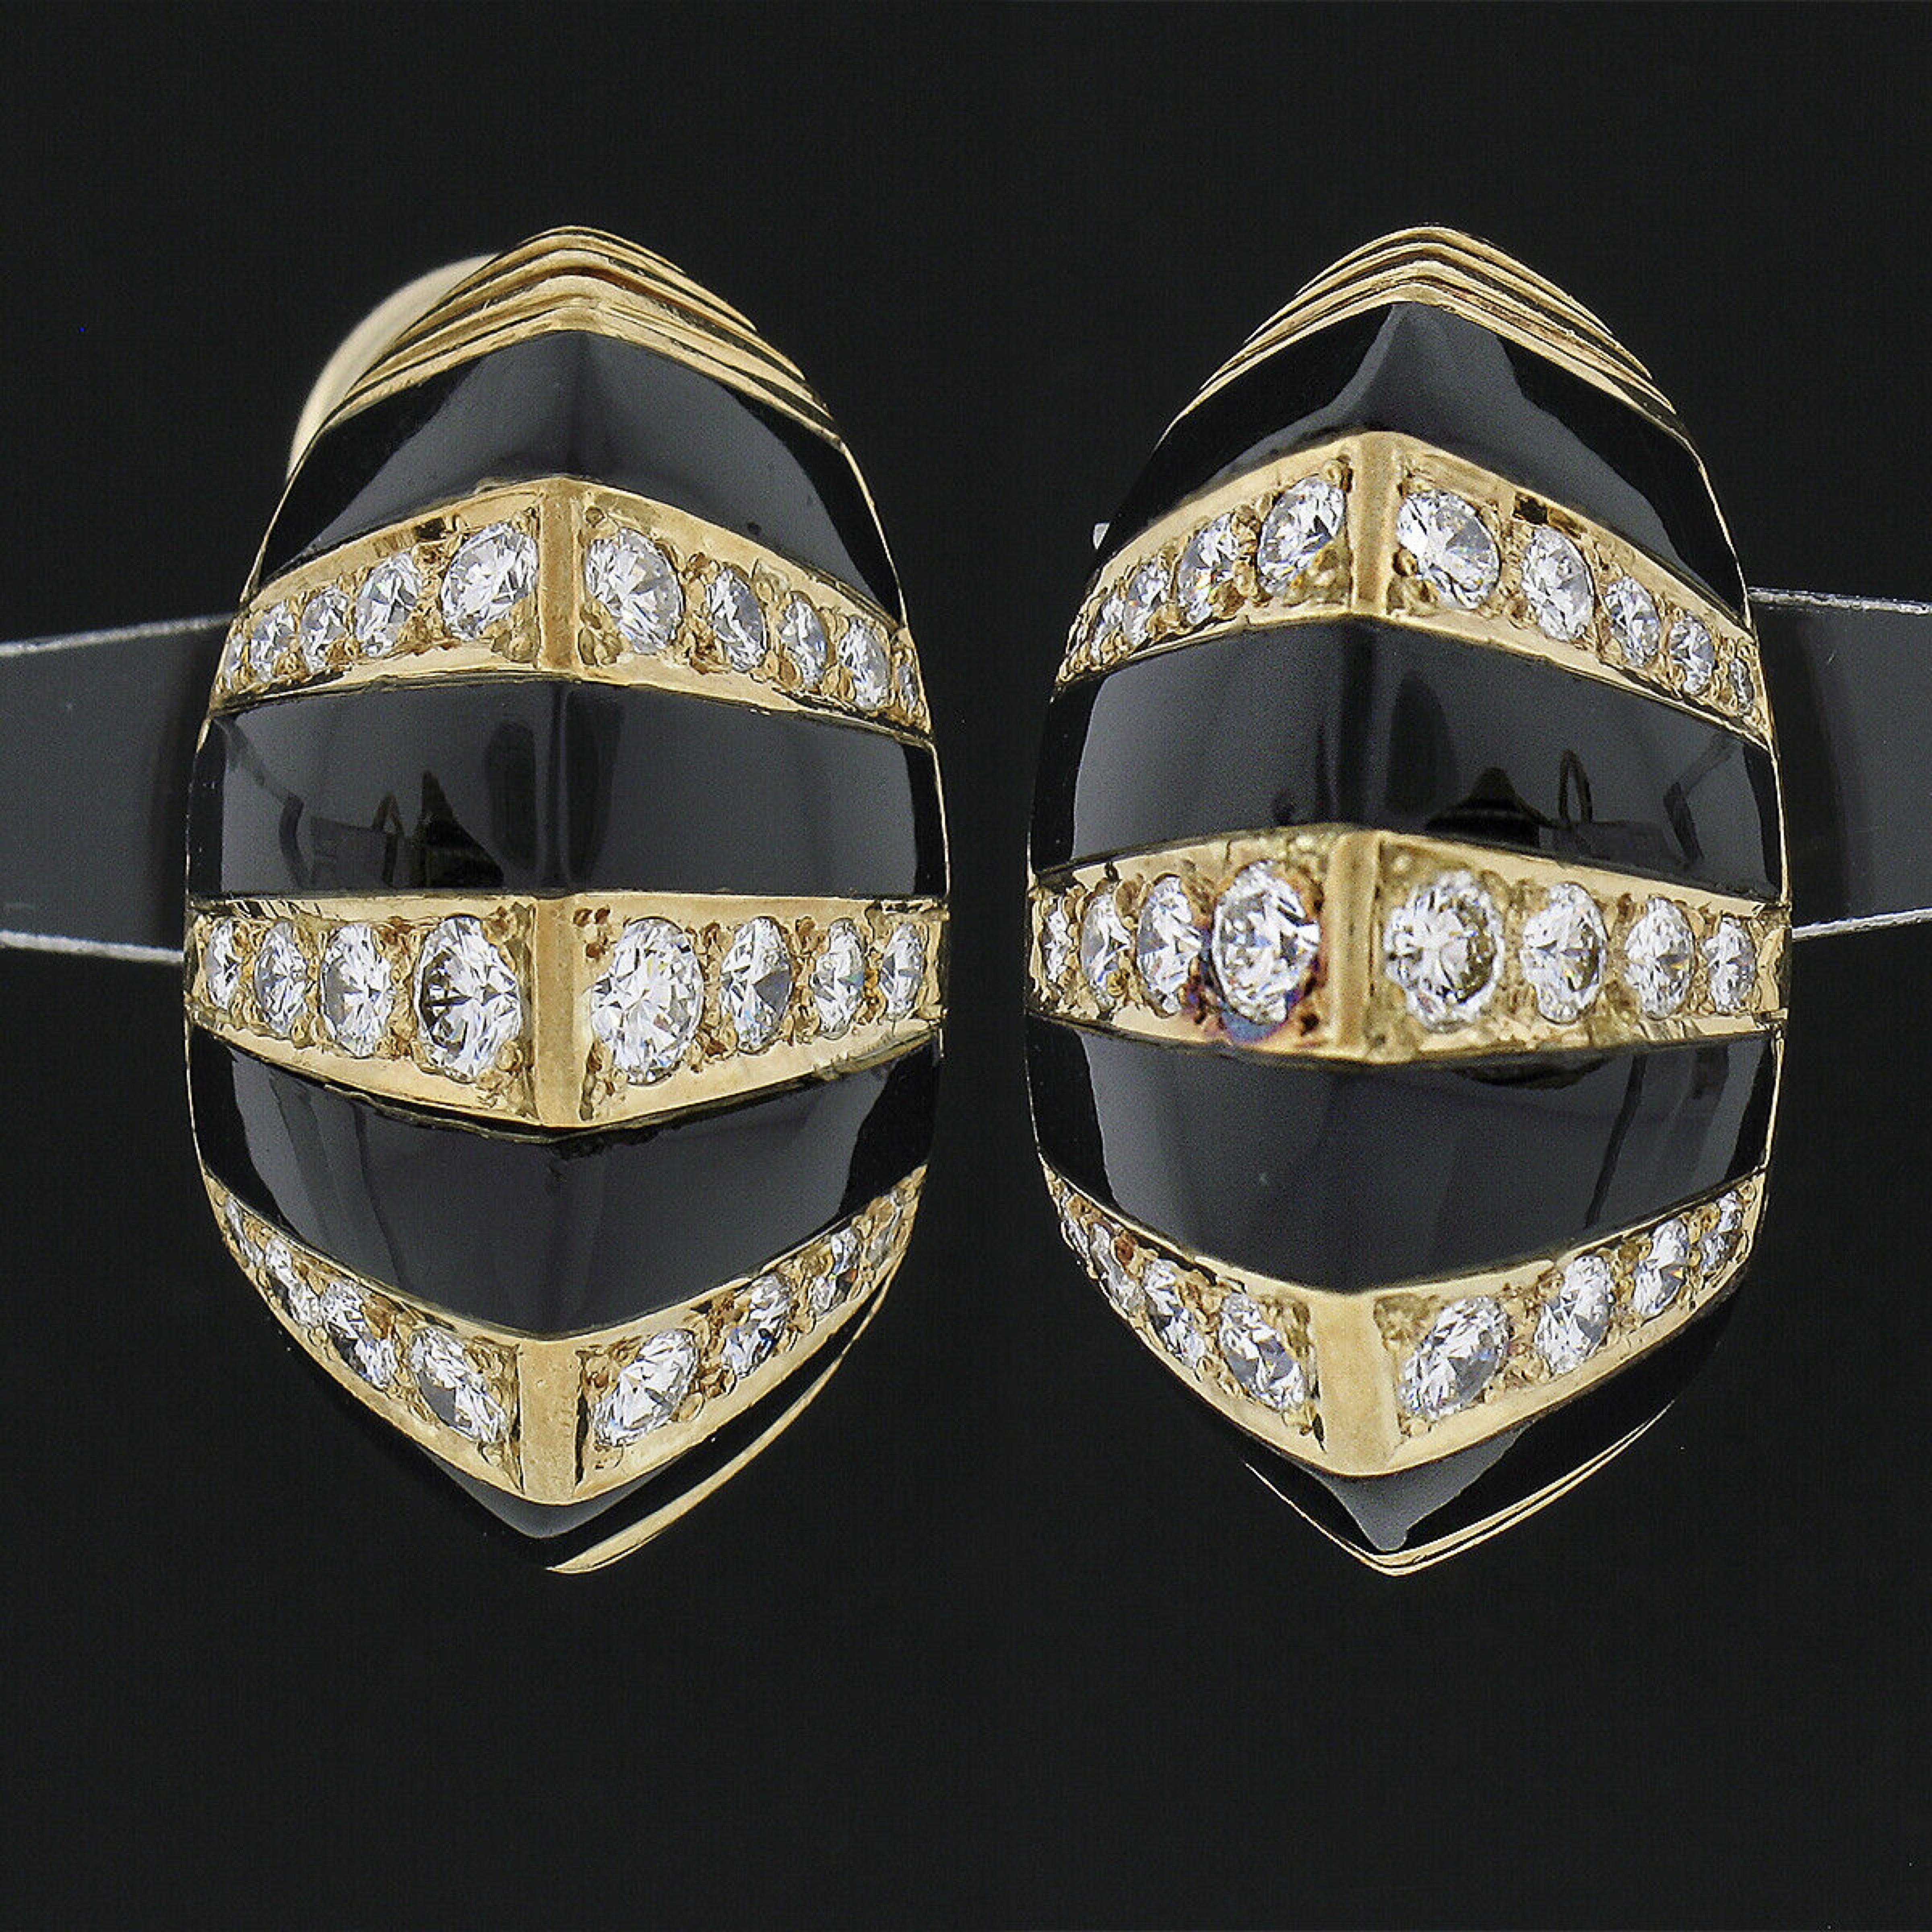 Diese außergewöhnlichen Vintage-Ohrringe sind aus massivem 18-karätigem Gelbgold gefertigt und verfügen über eine gewölbte Knopfform, die sich mit feinen schwarzen Onyx-Edelsteinen und Diamanten abwechselt. Ihr elegantes Streifendesign besteht aus